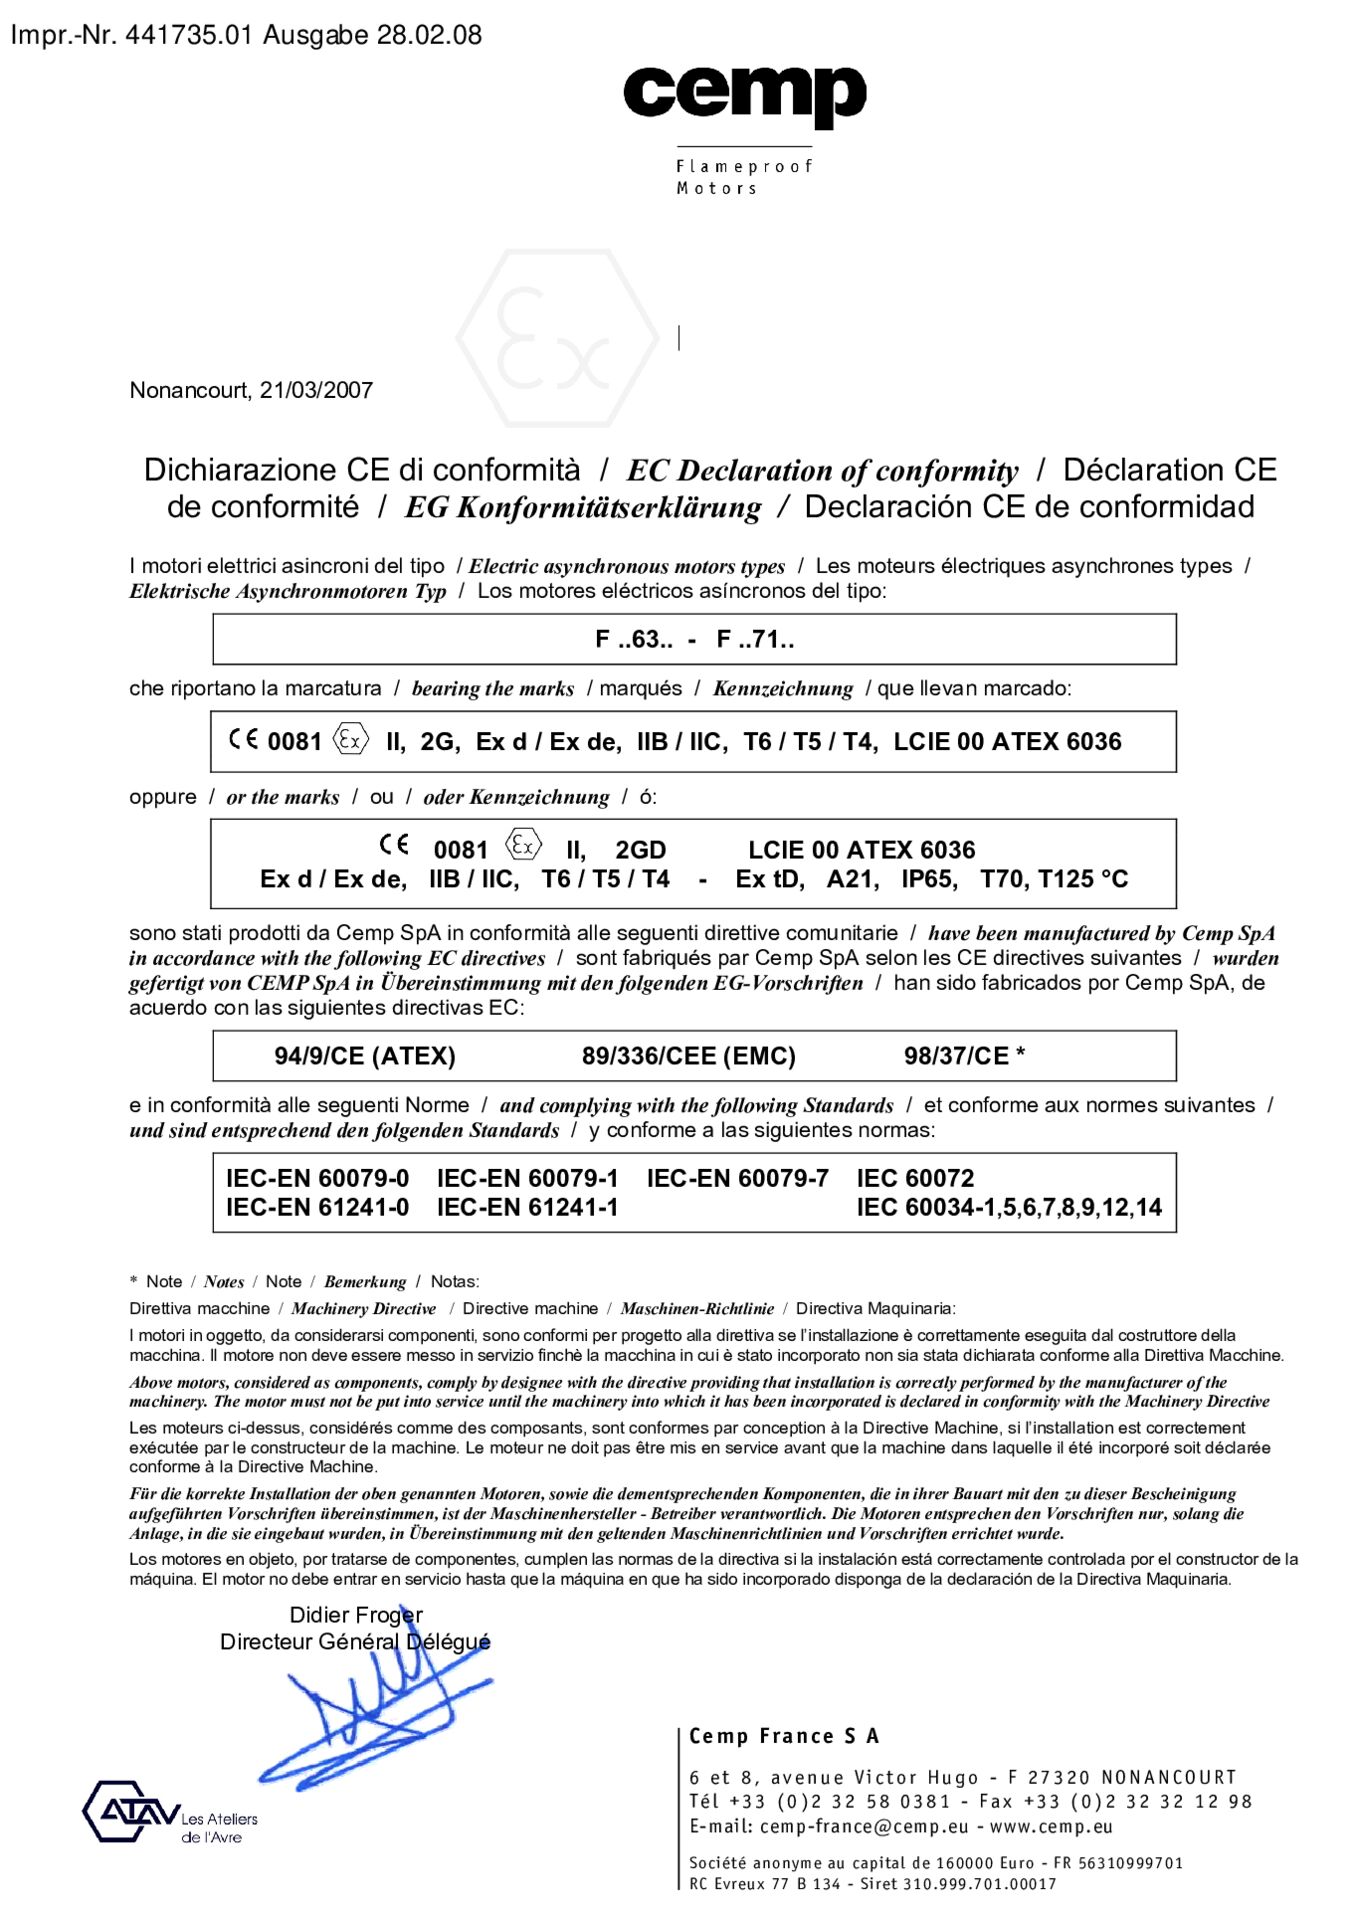 EG-Konformitätserklärung Asynchronmotoren F 63 - F 71EC Declaration of confirmity asynchronous motors F 63 - F 71